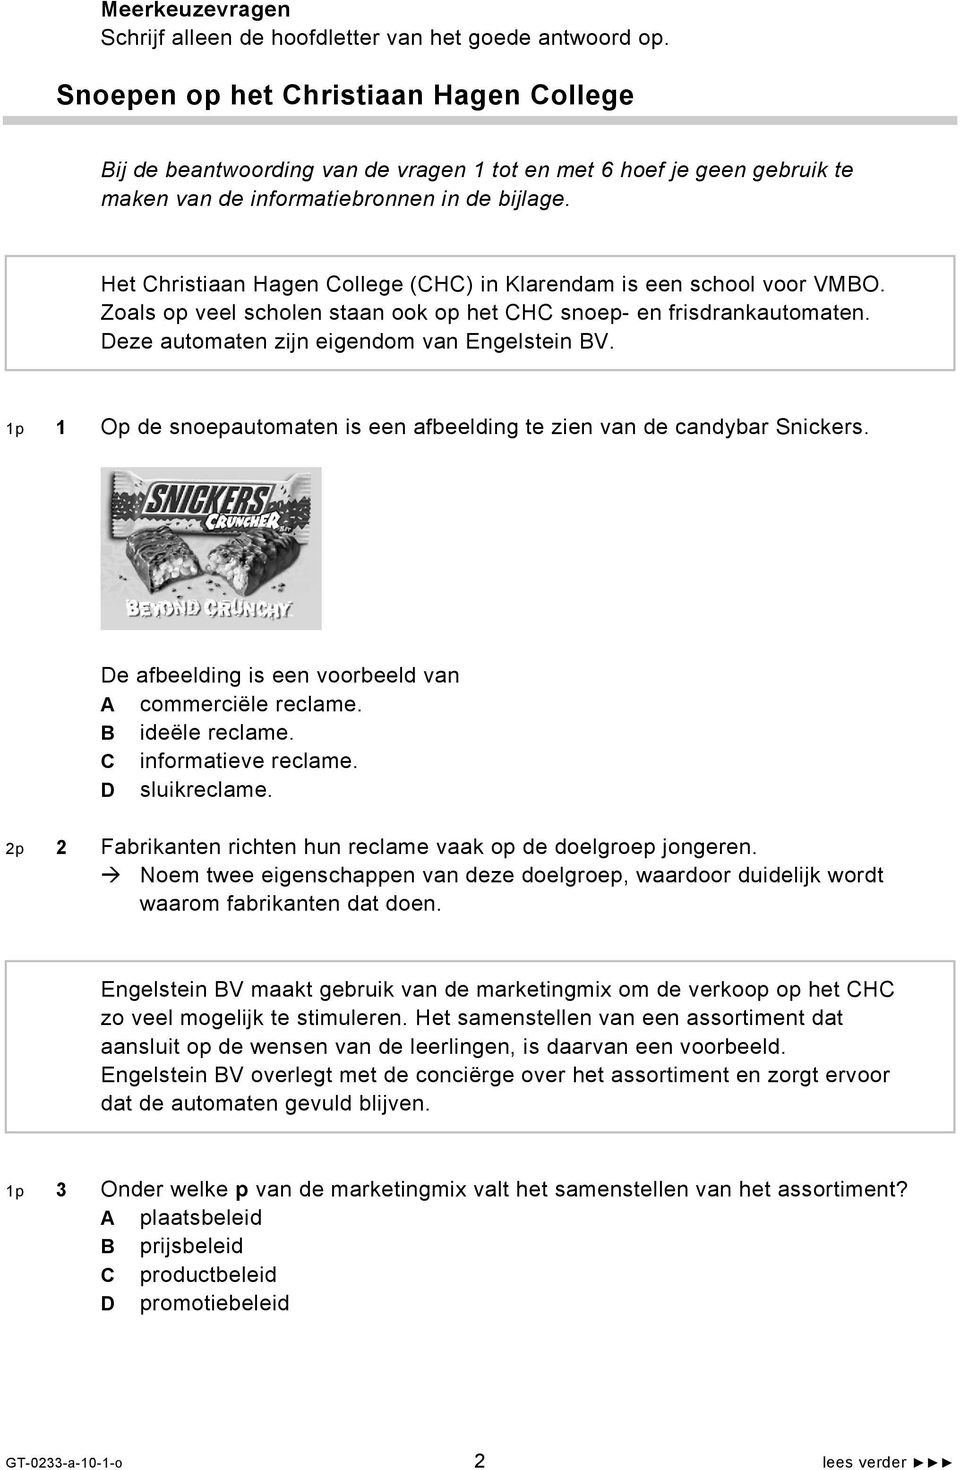 Het Christiaan Hagen College (CHC) in Klarendam is een school voor VMBO. Zoals op veel scholen staan ook op het CHC snoep- en frisdrankautomaten. Deze automaten zijn eigendom van Engelstein BV.